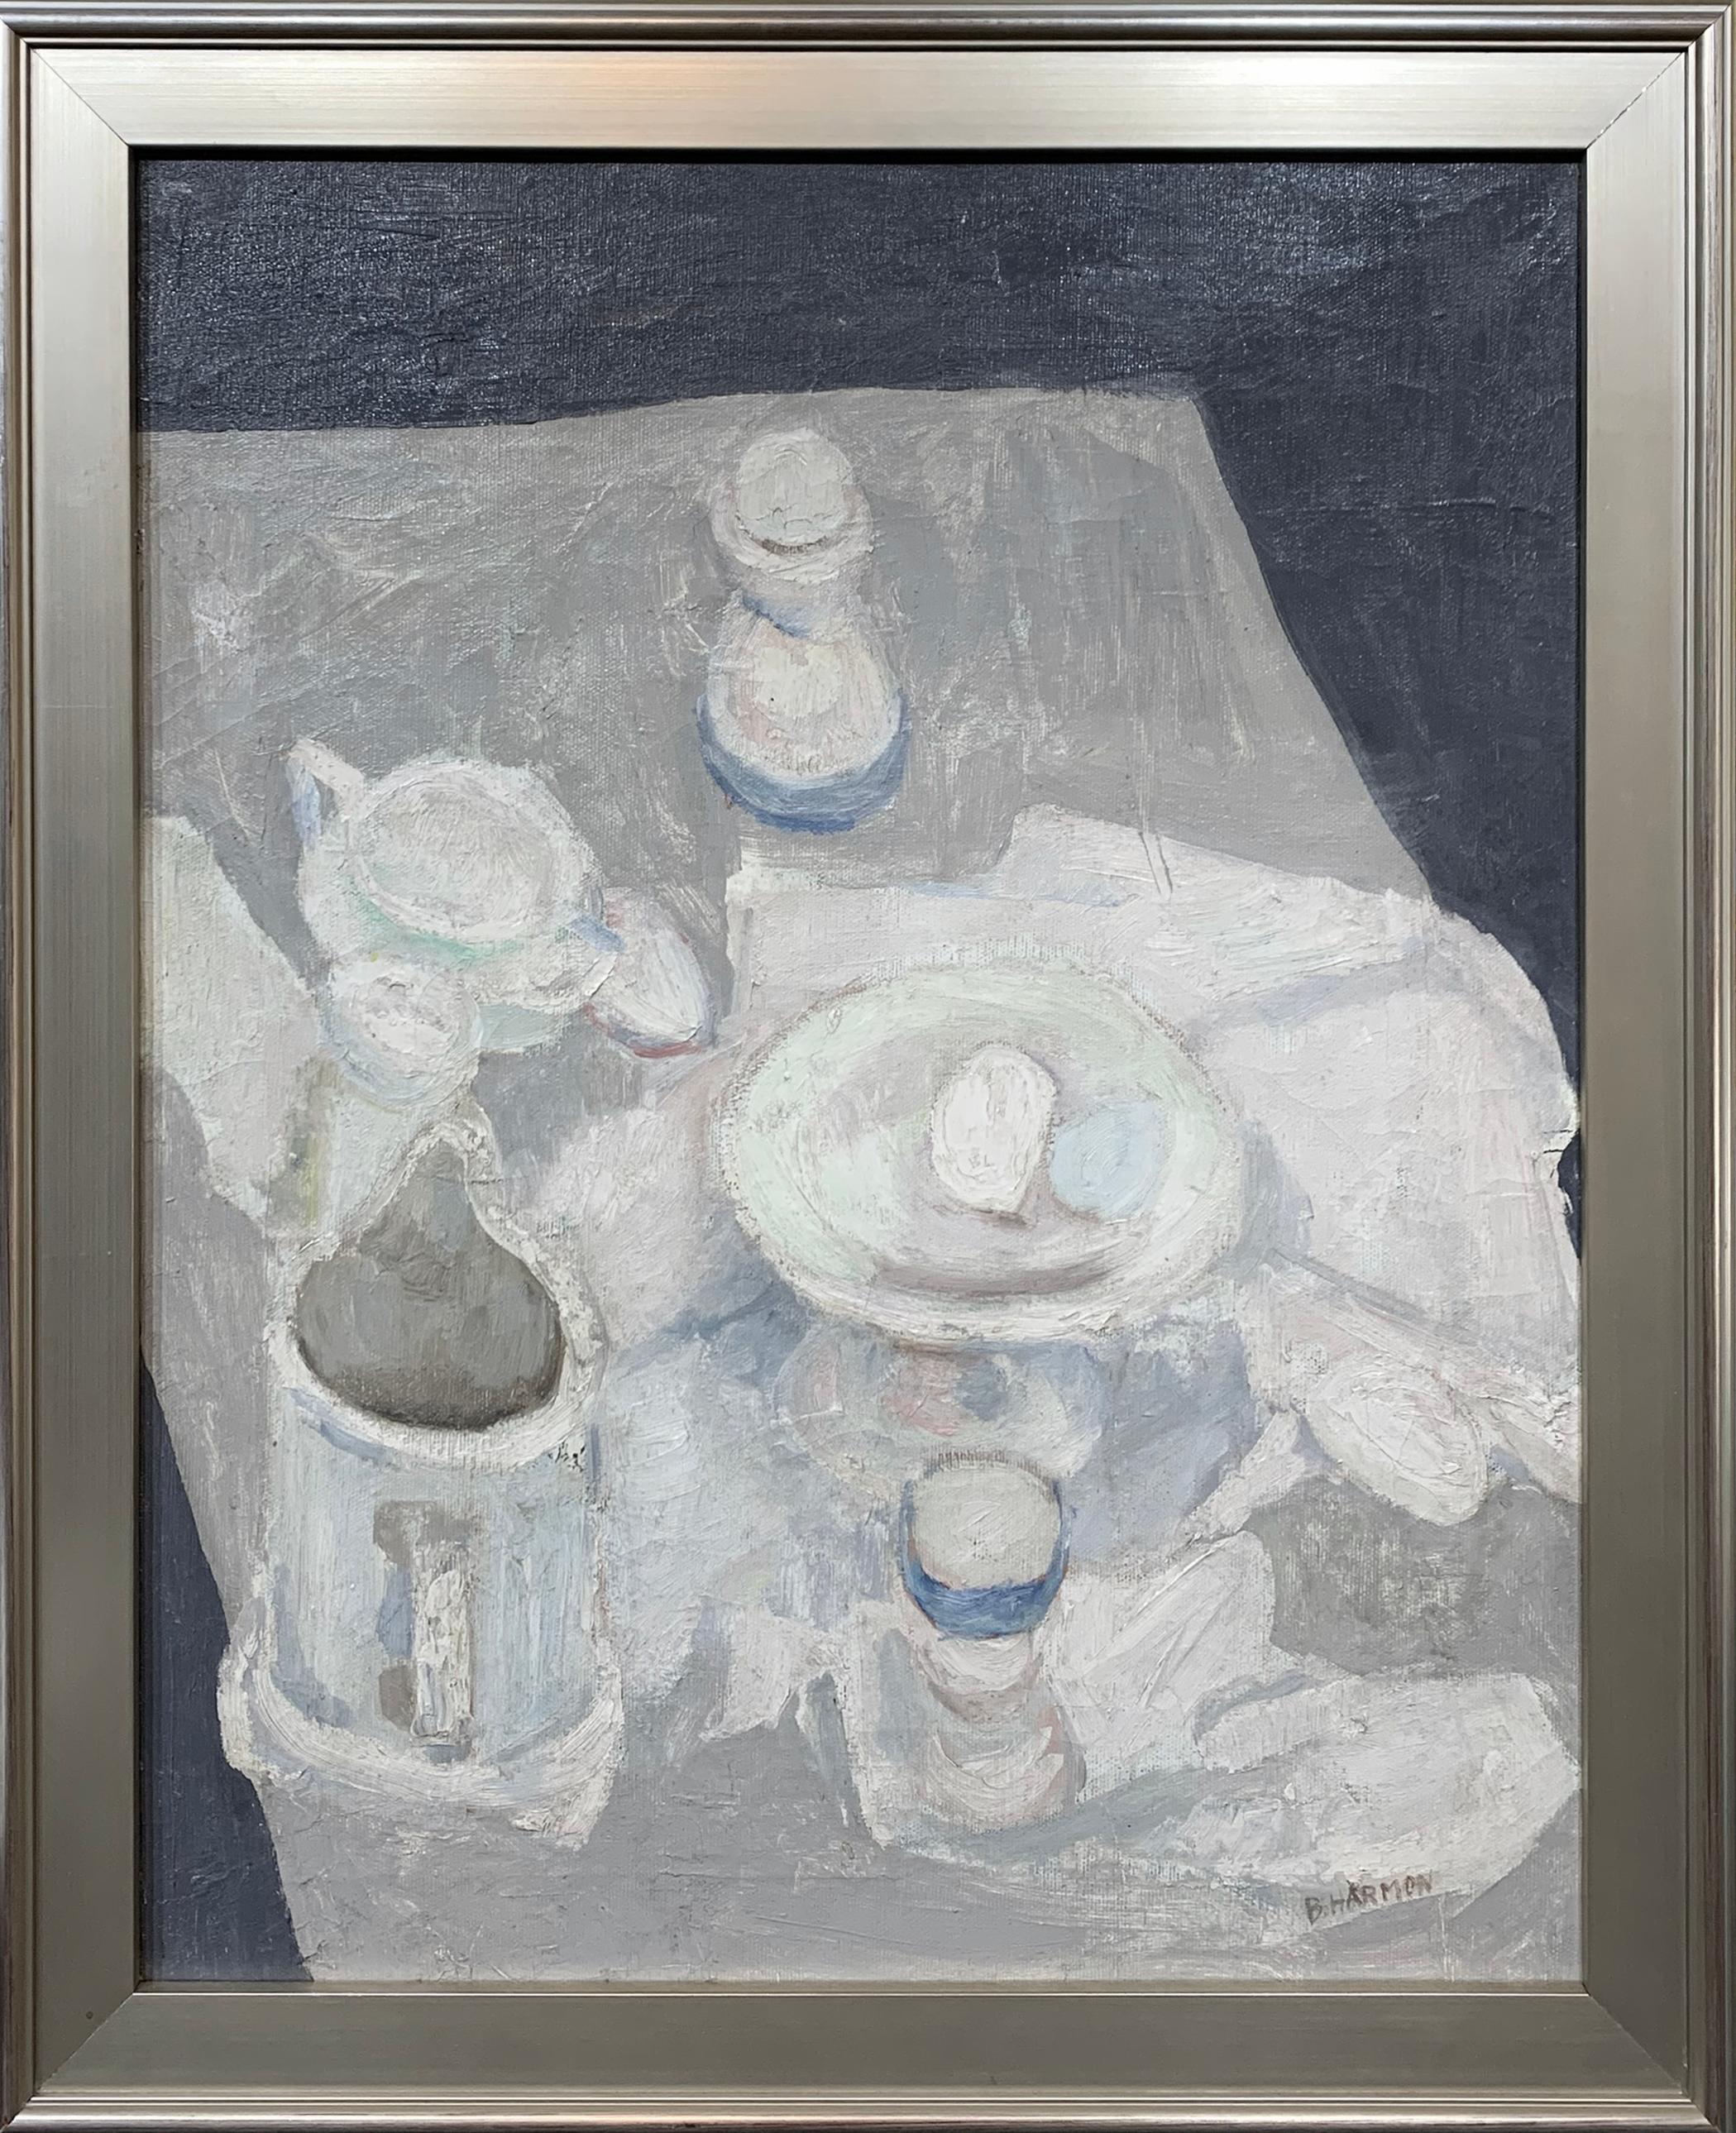 Blanc sur blanc bleu, nature morte expressionniste de l'artiste de Philadelphie - Painting de Bernard Harmon